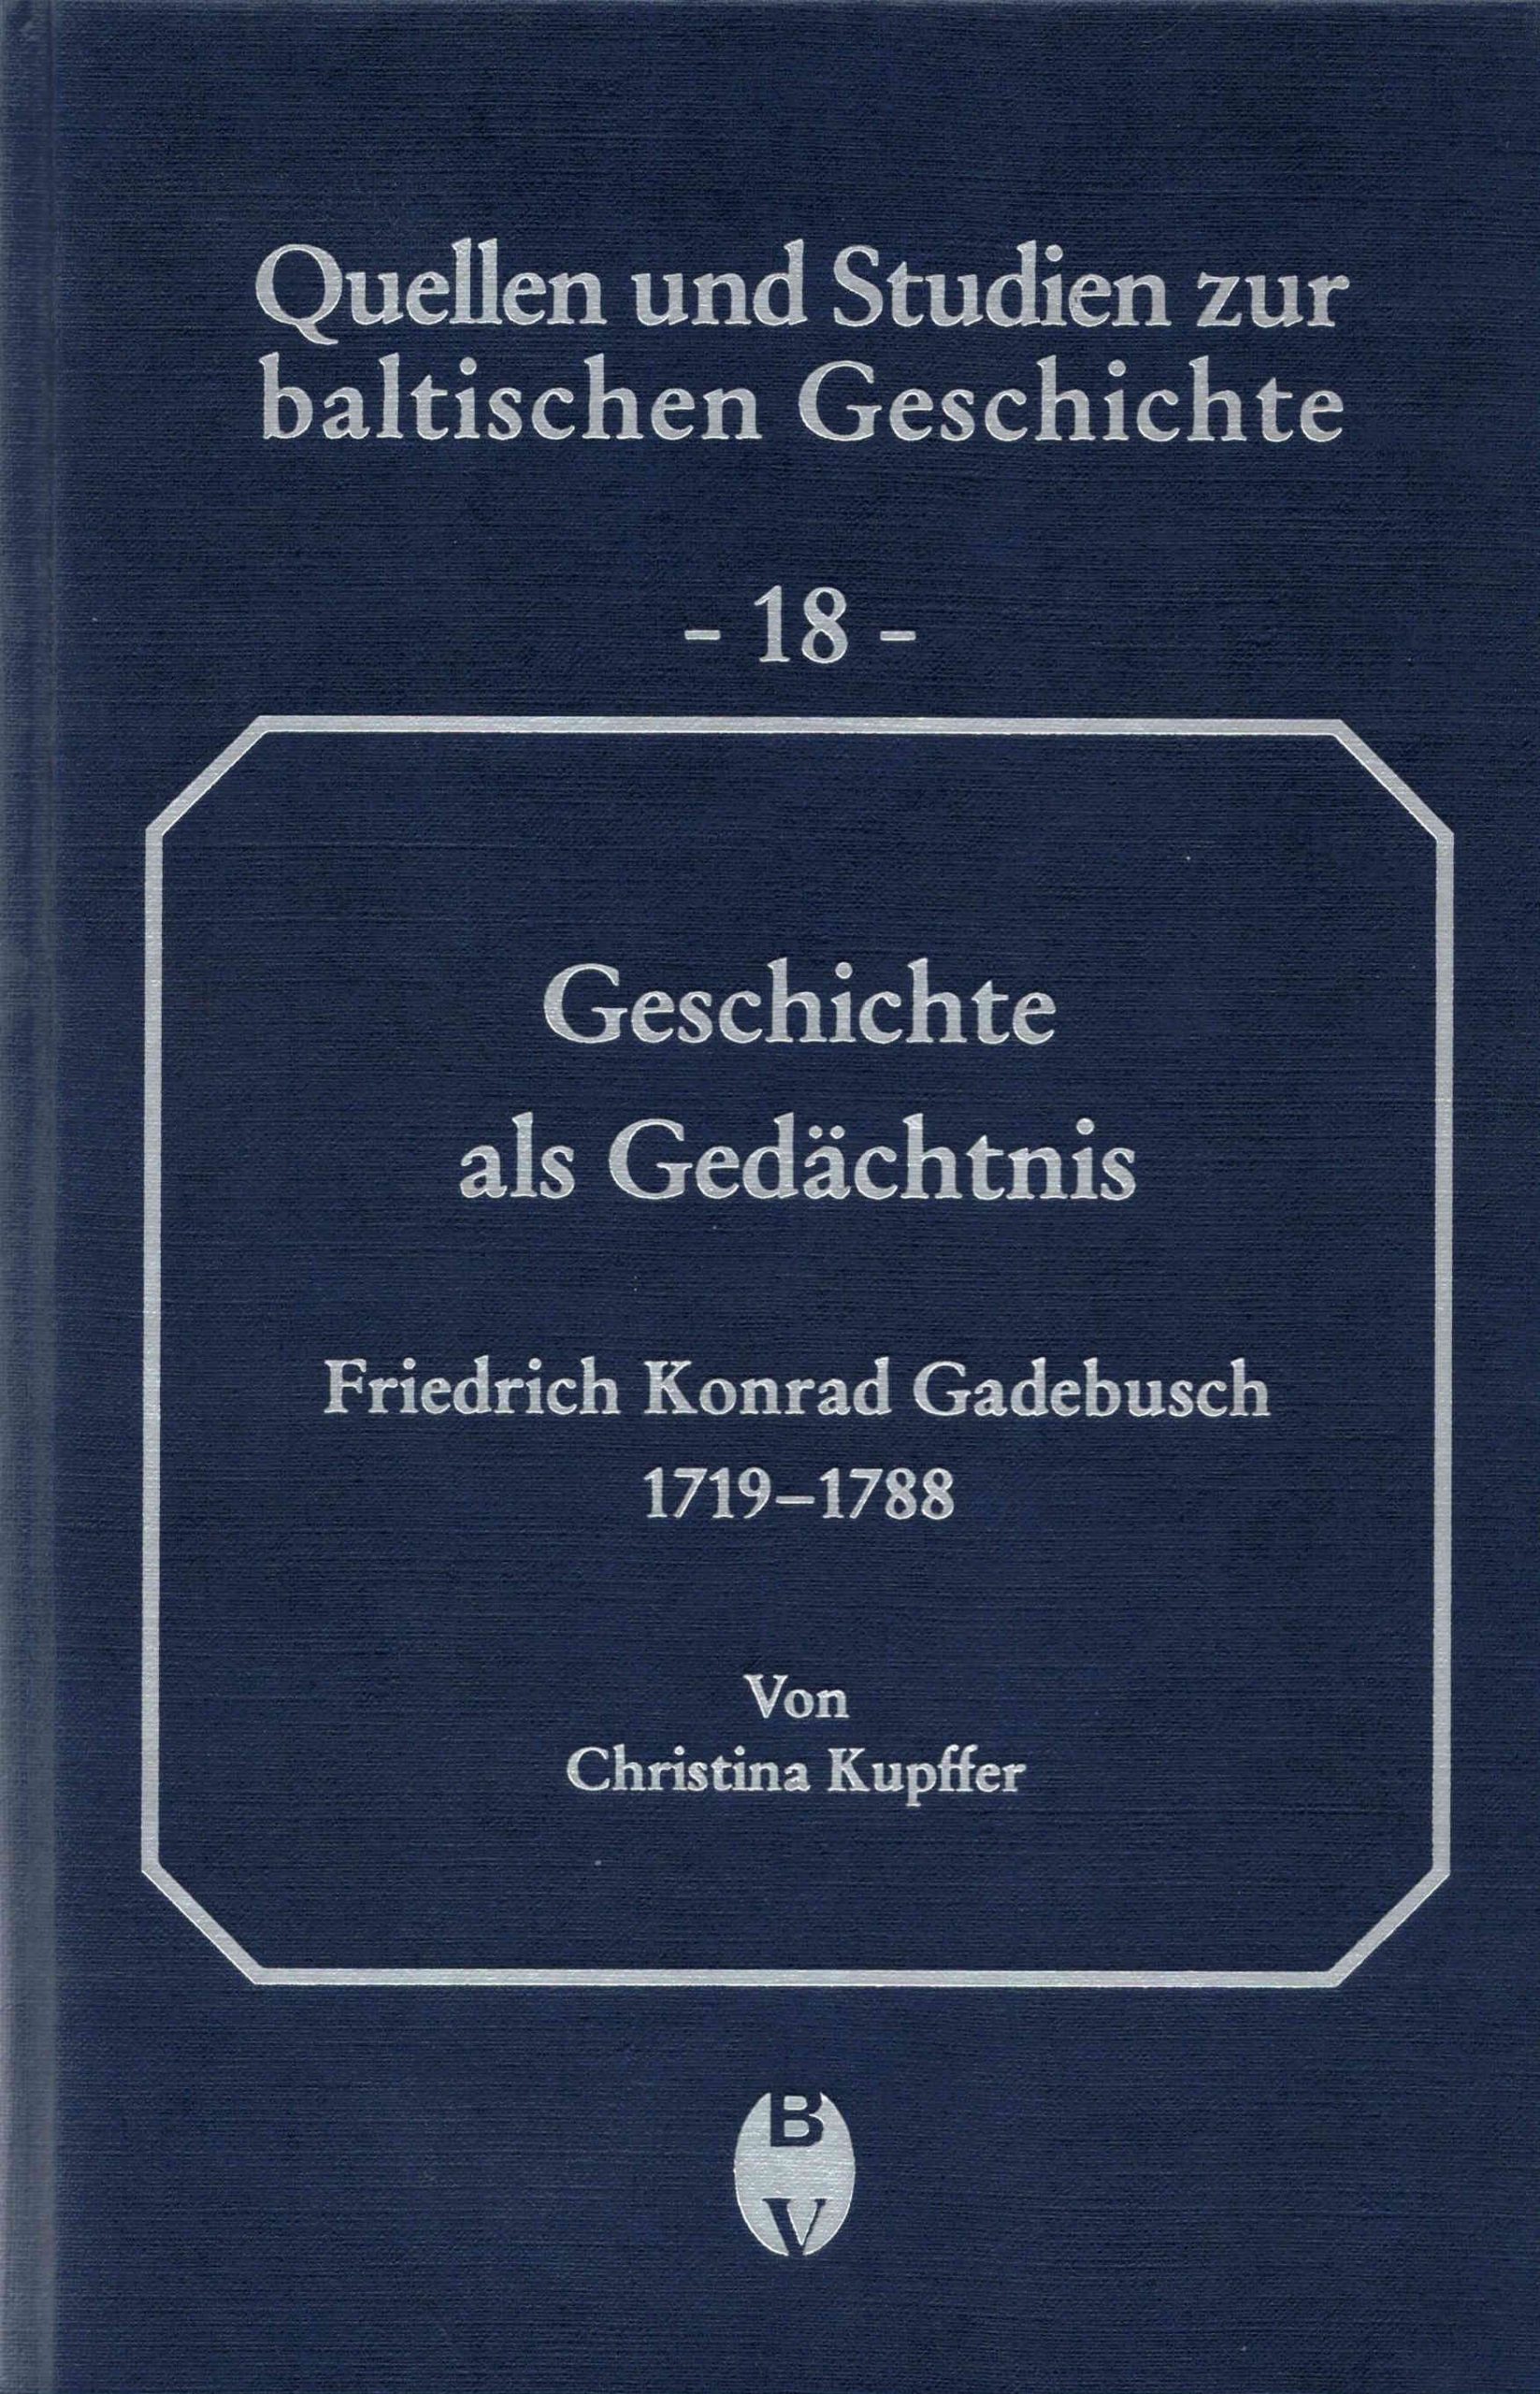 Band 18: Aufklärung im Baltikum. Leben und Werk des livländischen Gelehrten August Wilhelm Hupel (1737-1819)